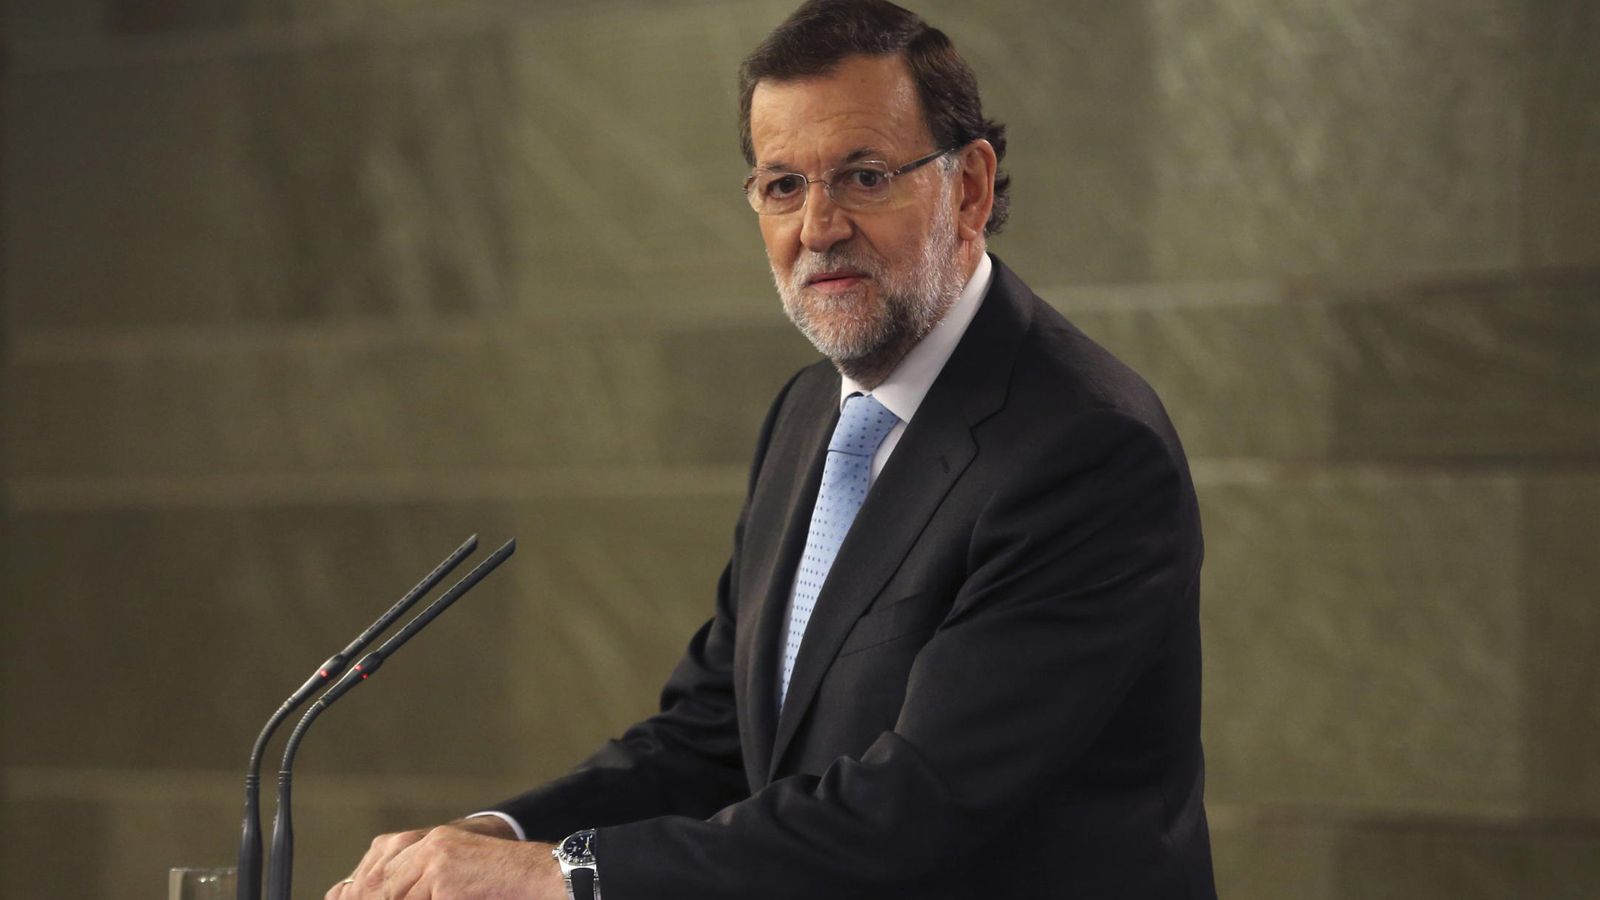 Foto: El presidente del Gobierno, Mariano Rajoy. (EFE)